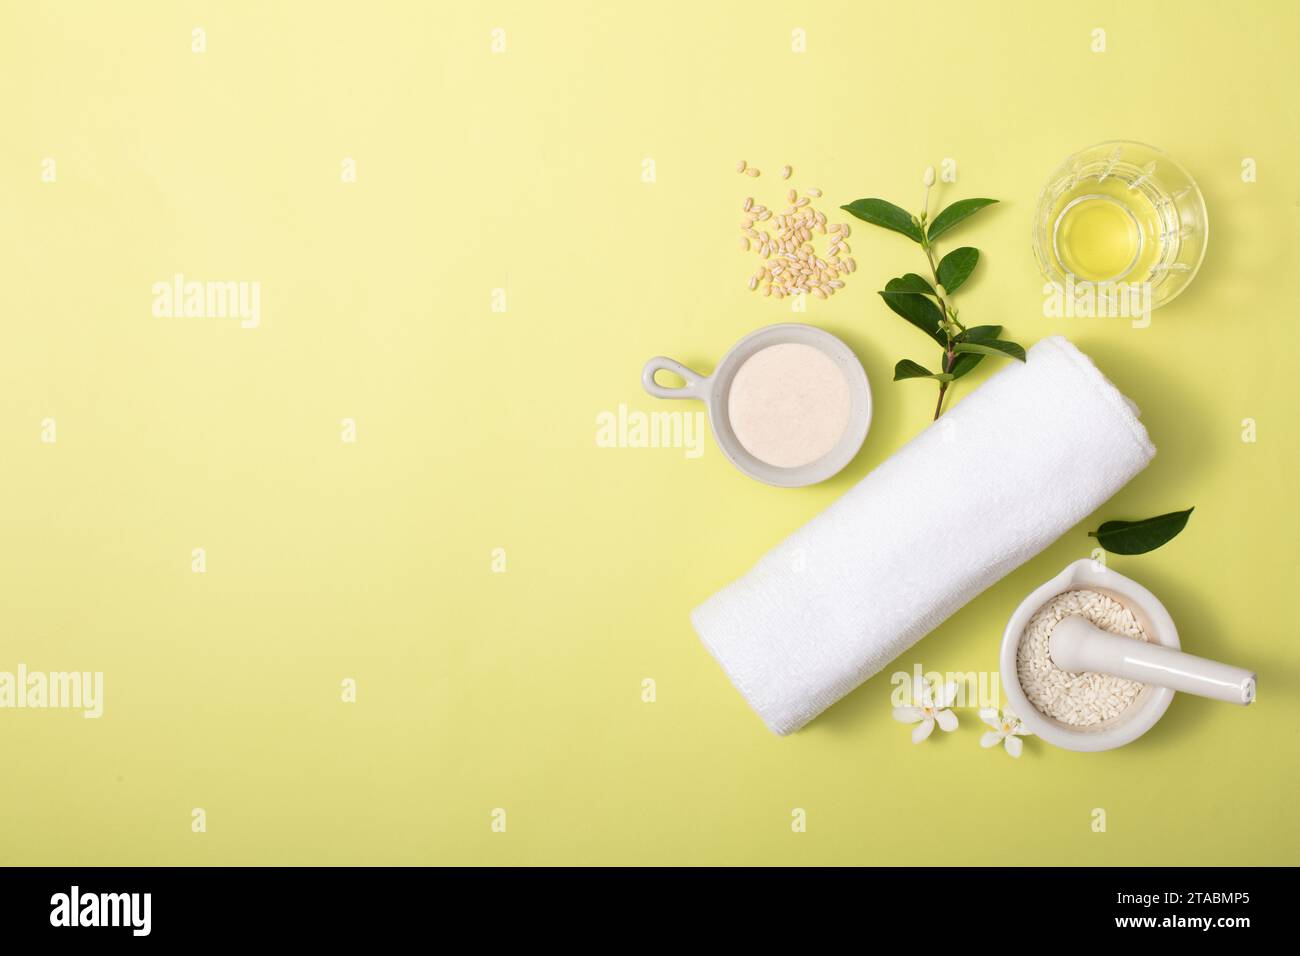 La polvere di crusca di riso è contenuta in utensili di ceramica, foglie verdi, un bicchiere e un asciugamano su sfondo giallo chiaro. Spazio libero per il design o il prodotto di Foto Stock